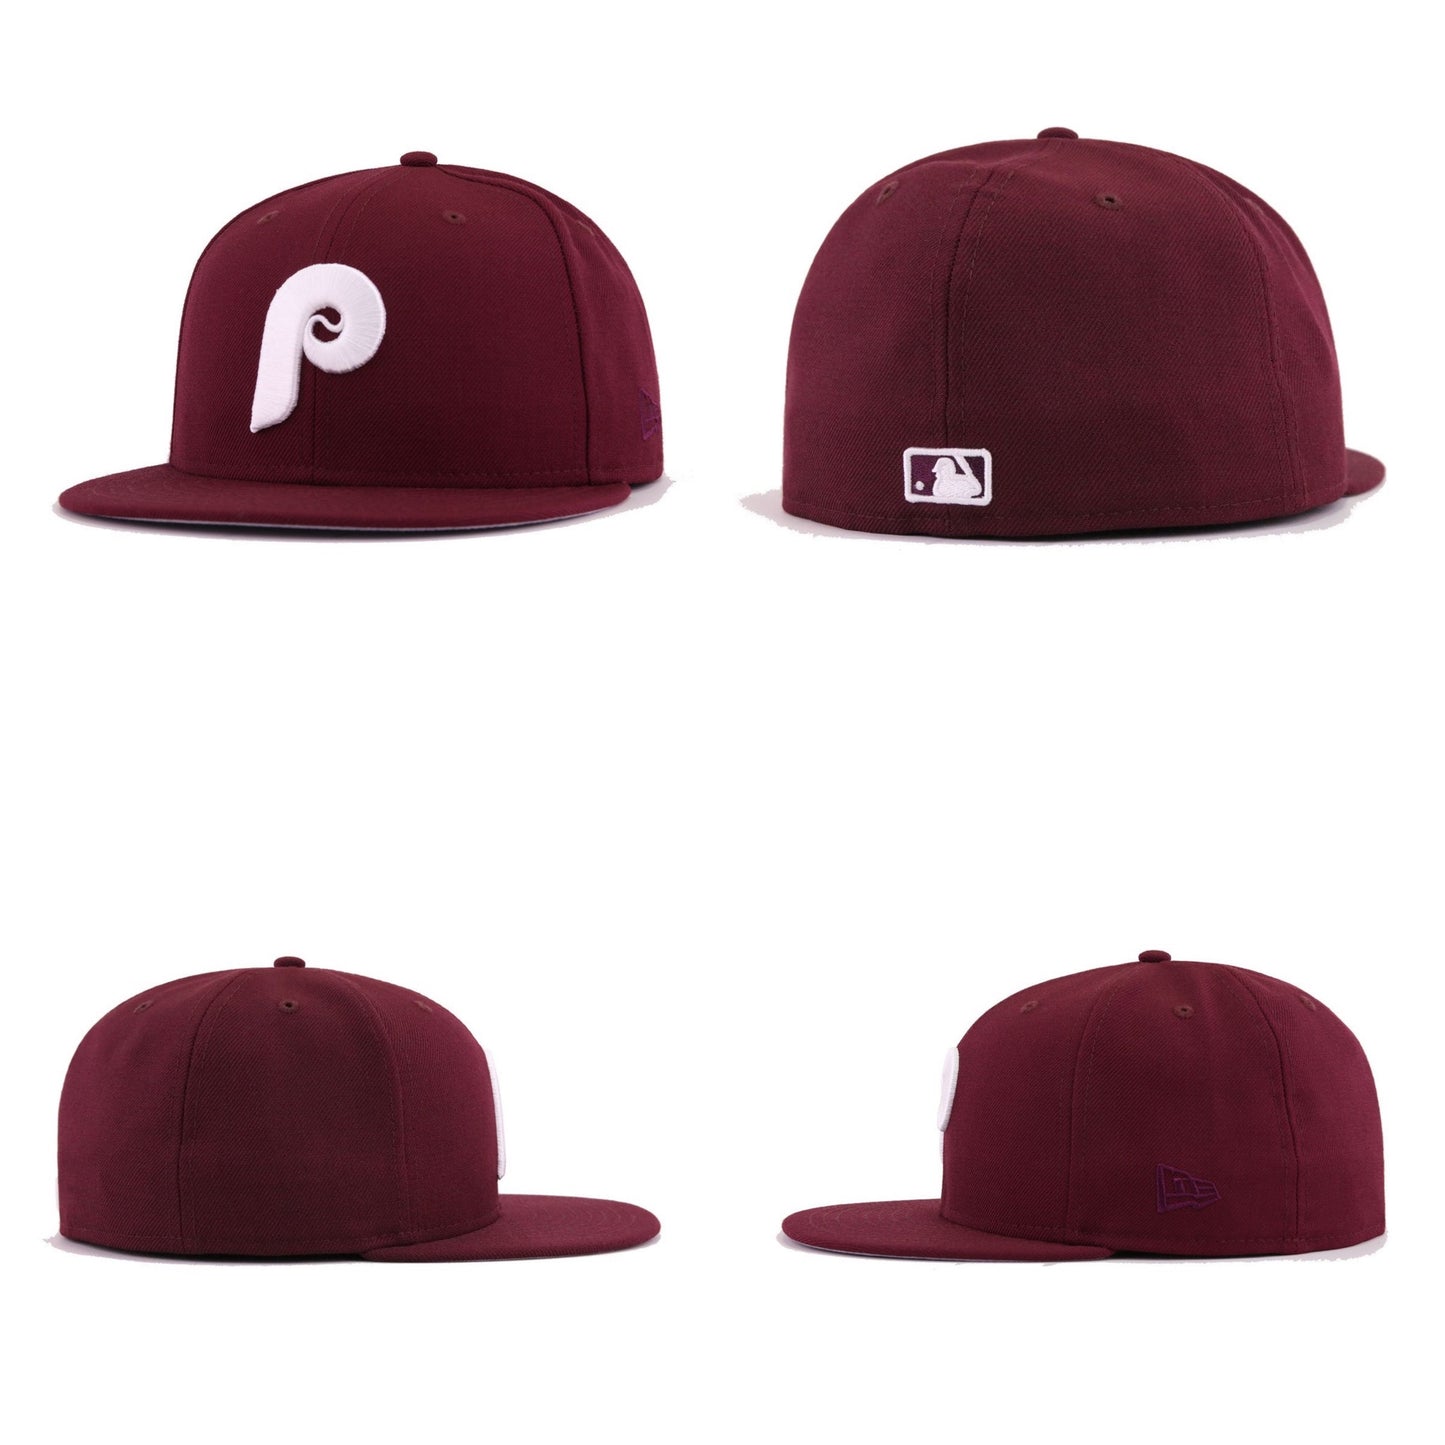 Philadelphia Phillies fitted hat – AAS ATHLETICS